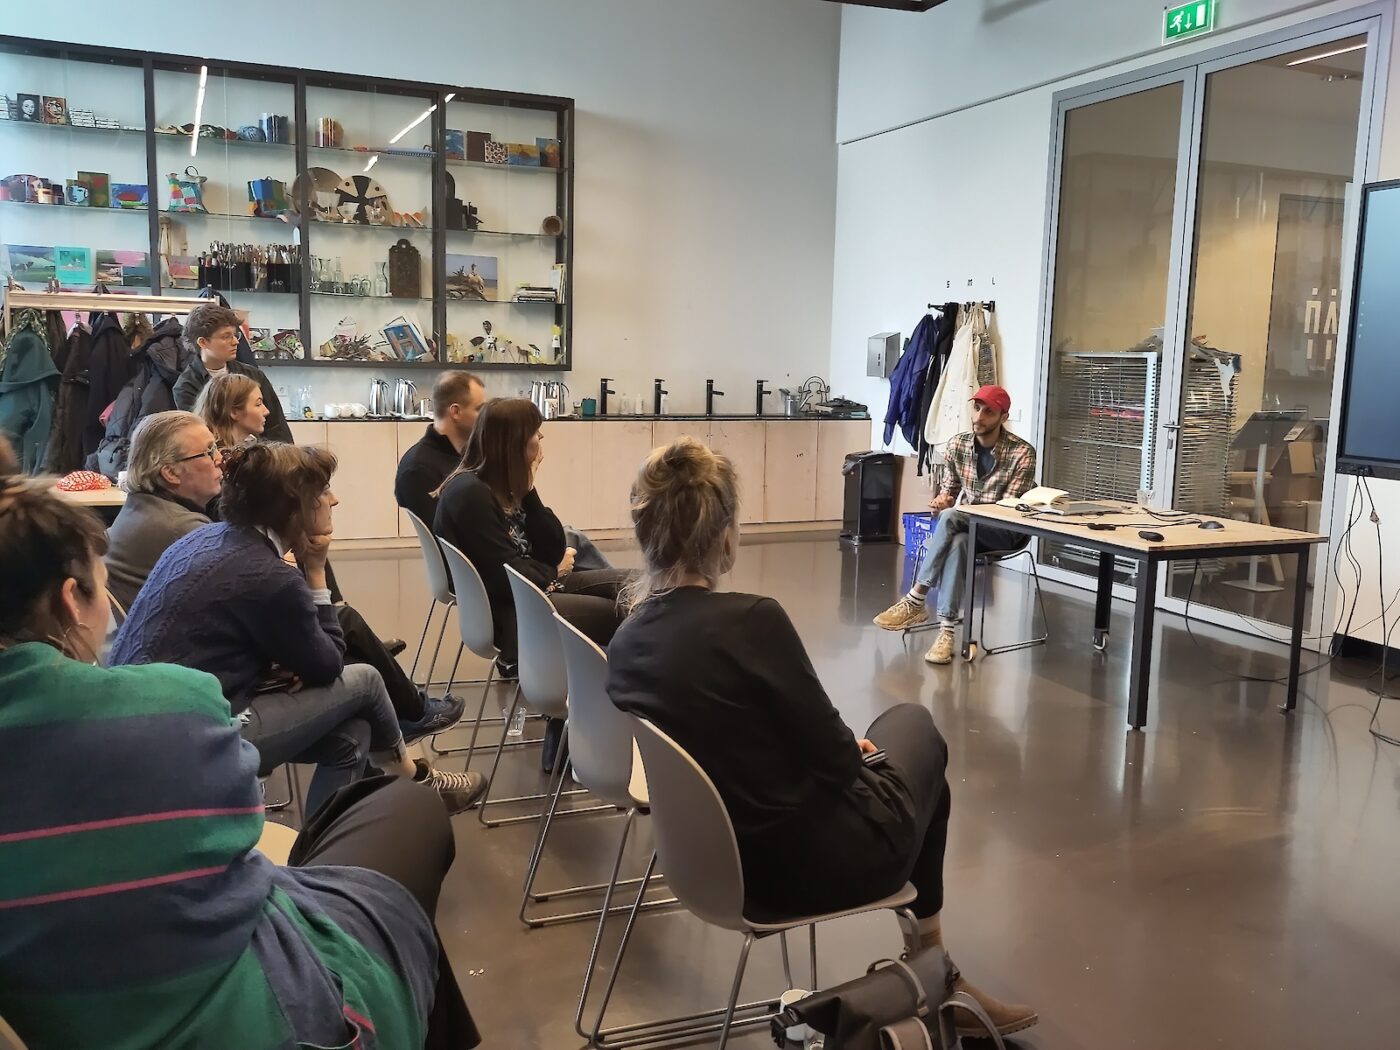 Voordracht van kunstenaar Ra'fat Ali voor publiek tijdens een bijeenkomst van het Netwerk Cultuur & Natuur, gehost door het Fries Museum.